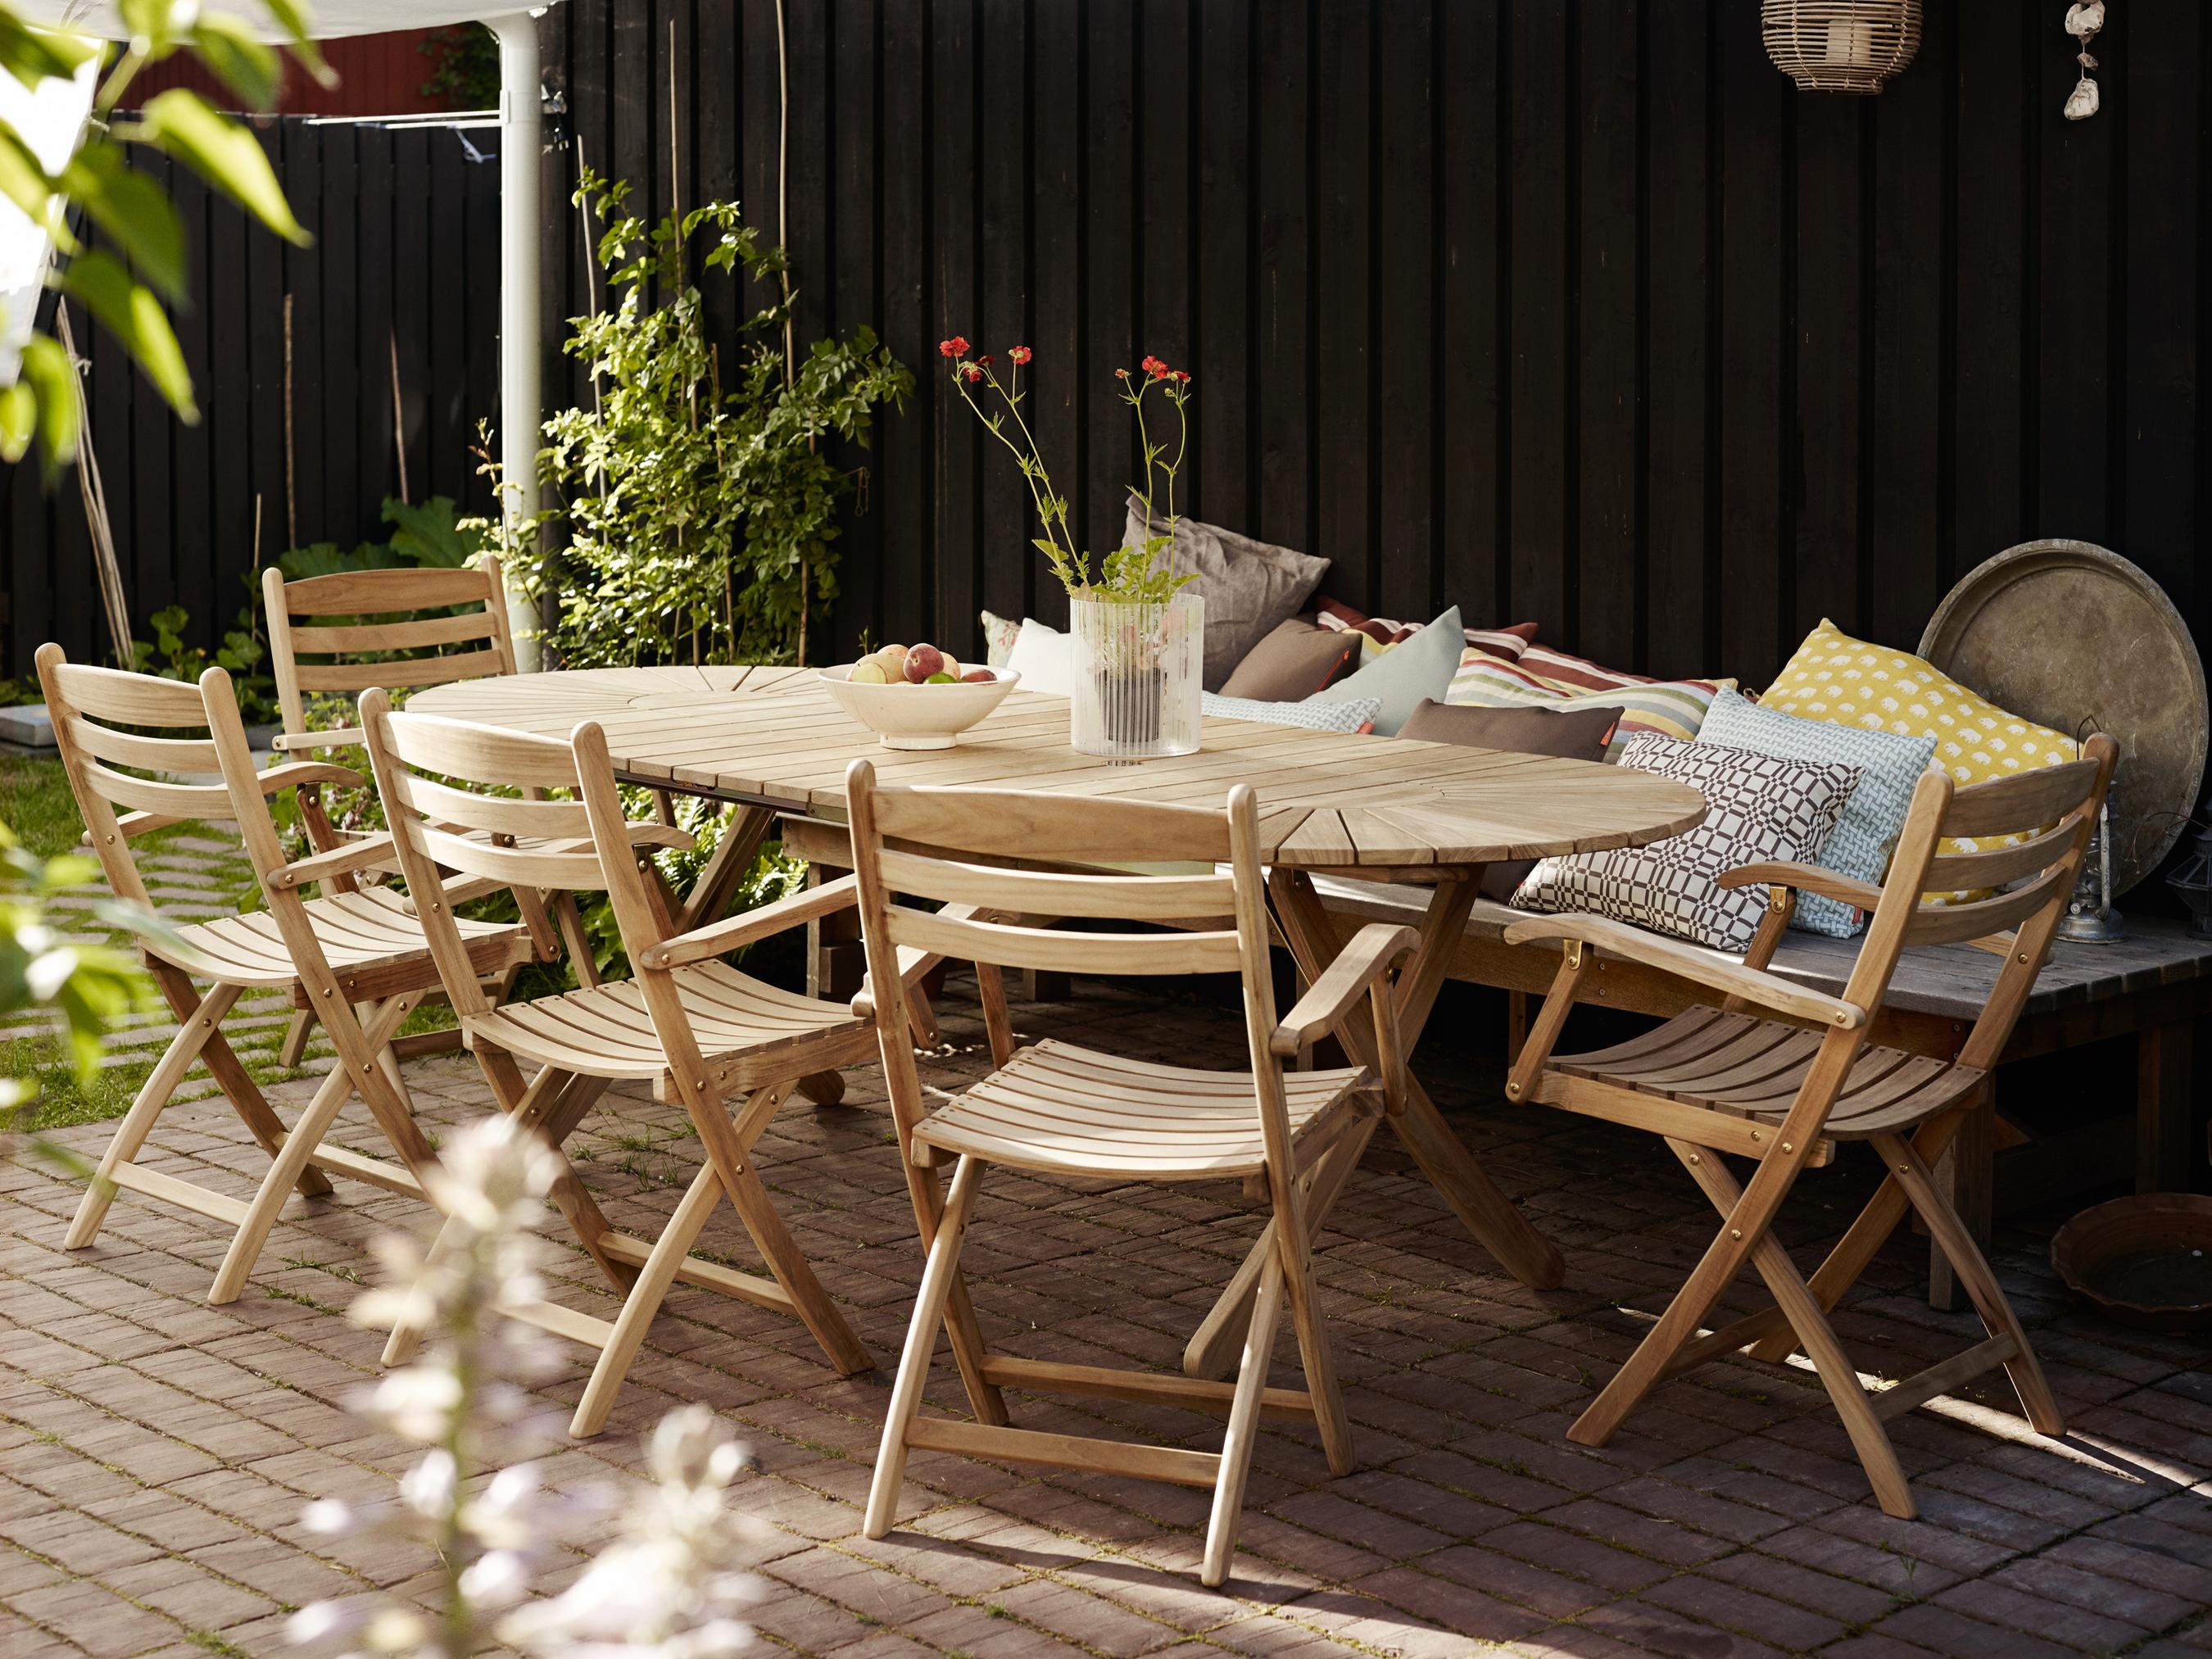 Gemütliche Sitzecke im Garten #gartenparty ©Skagerak